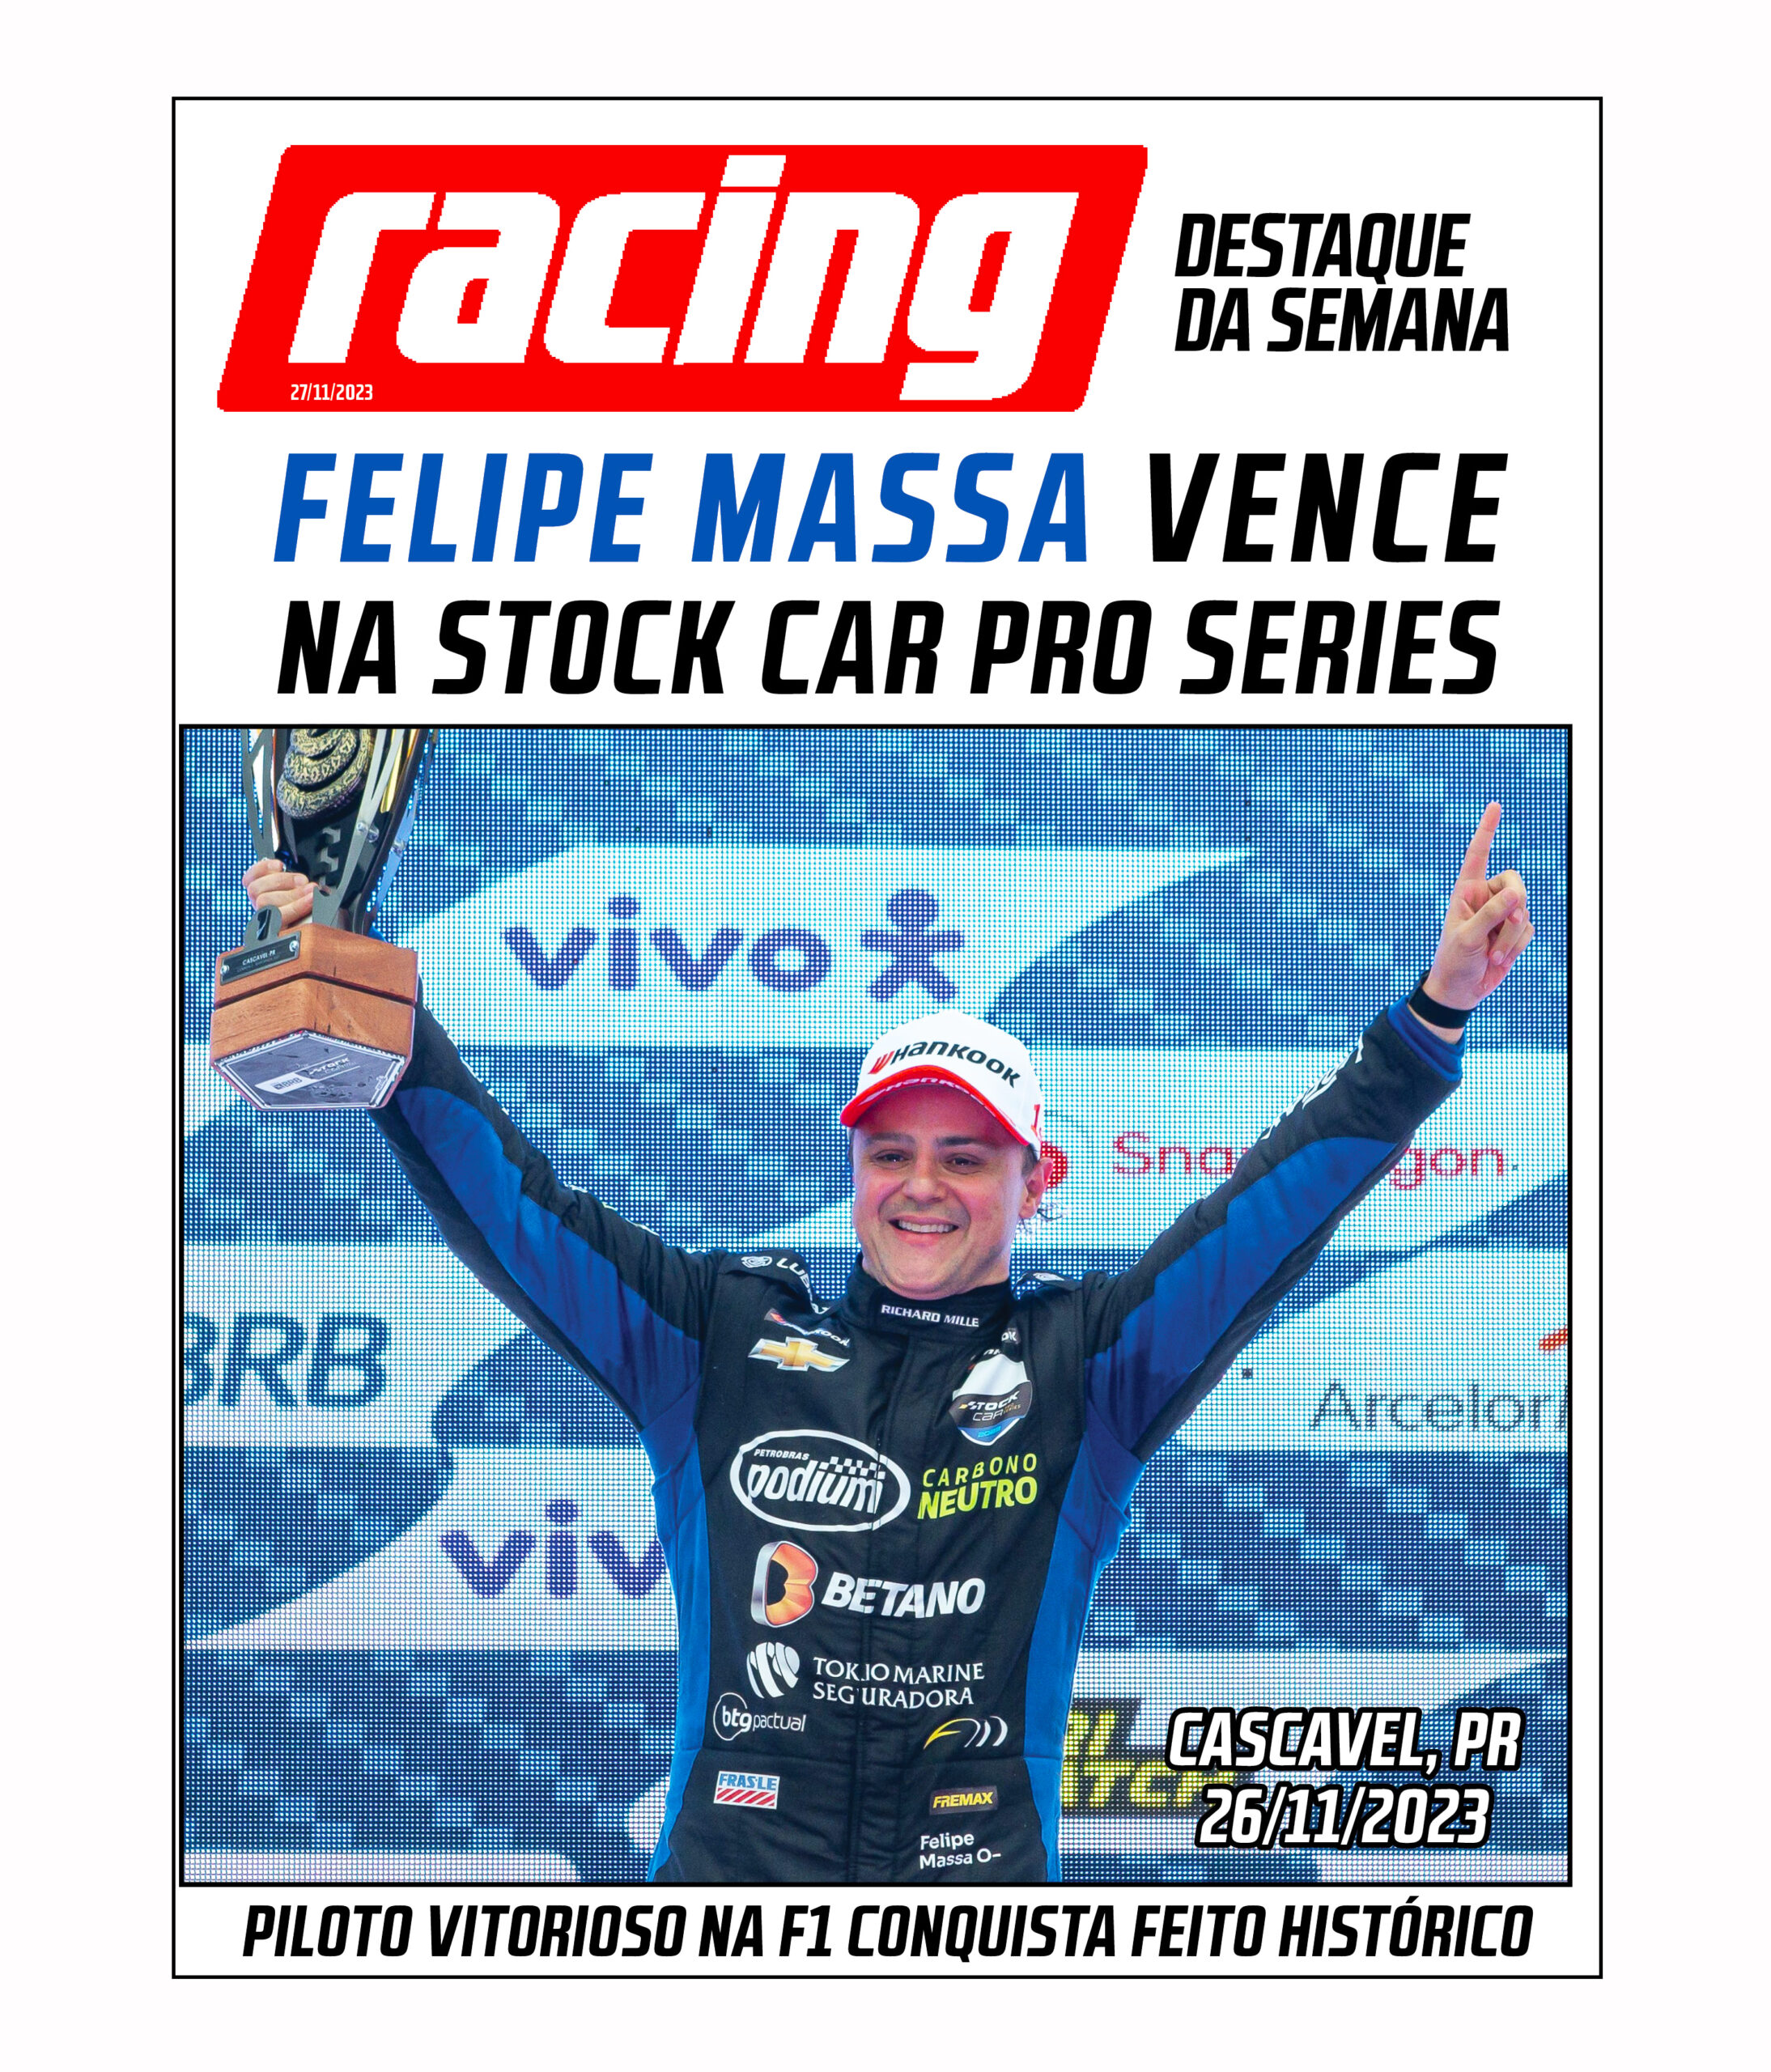 Carro de Felipe Massa na Corrida do Milhão é divulgado - Gazeta Esportiva